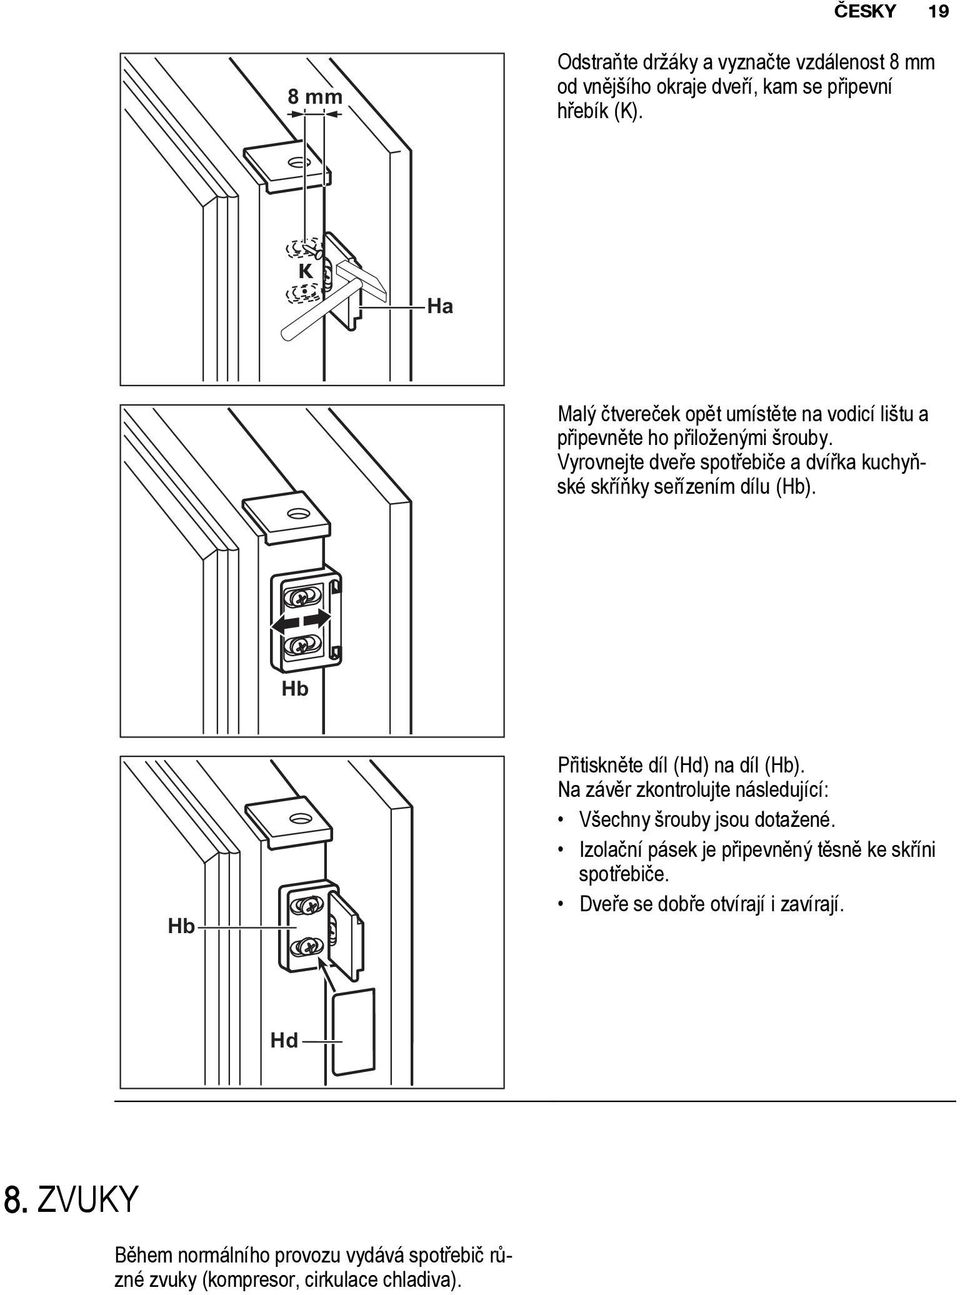 Vyrovnejte dveře spotřebiče a dvířka kuchyňské skříňky seřízením dílu (Hb). Hb Hb Přitiskněte díl (Hd) na díl (Hb).